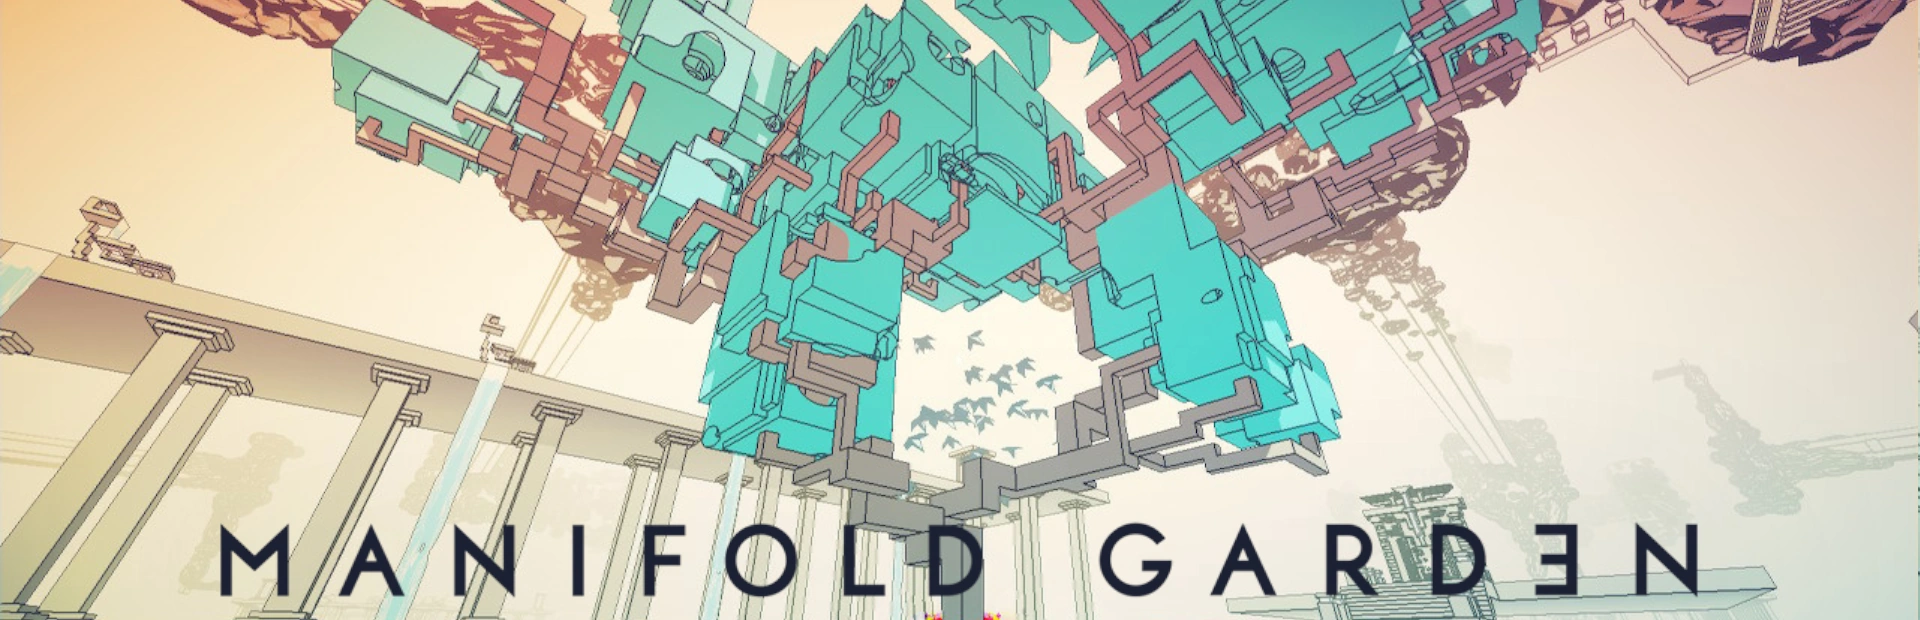 دانلود بازی Manifold Garden برای کامپیوتر کرک شده | گیمباتو